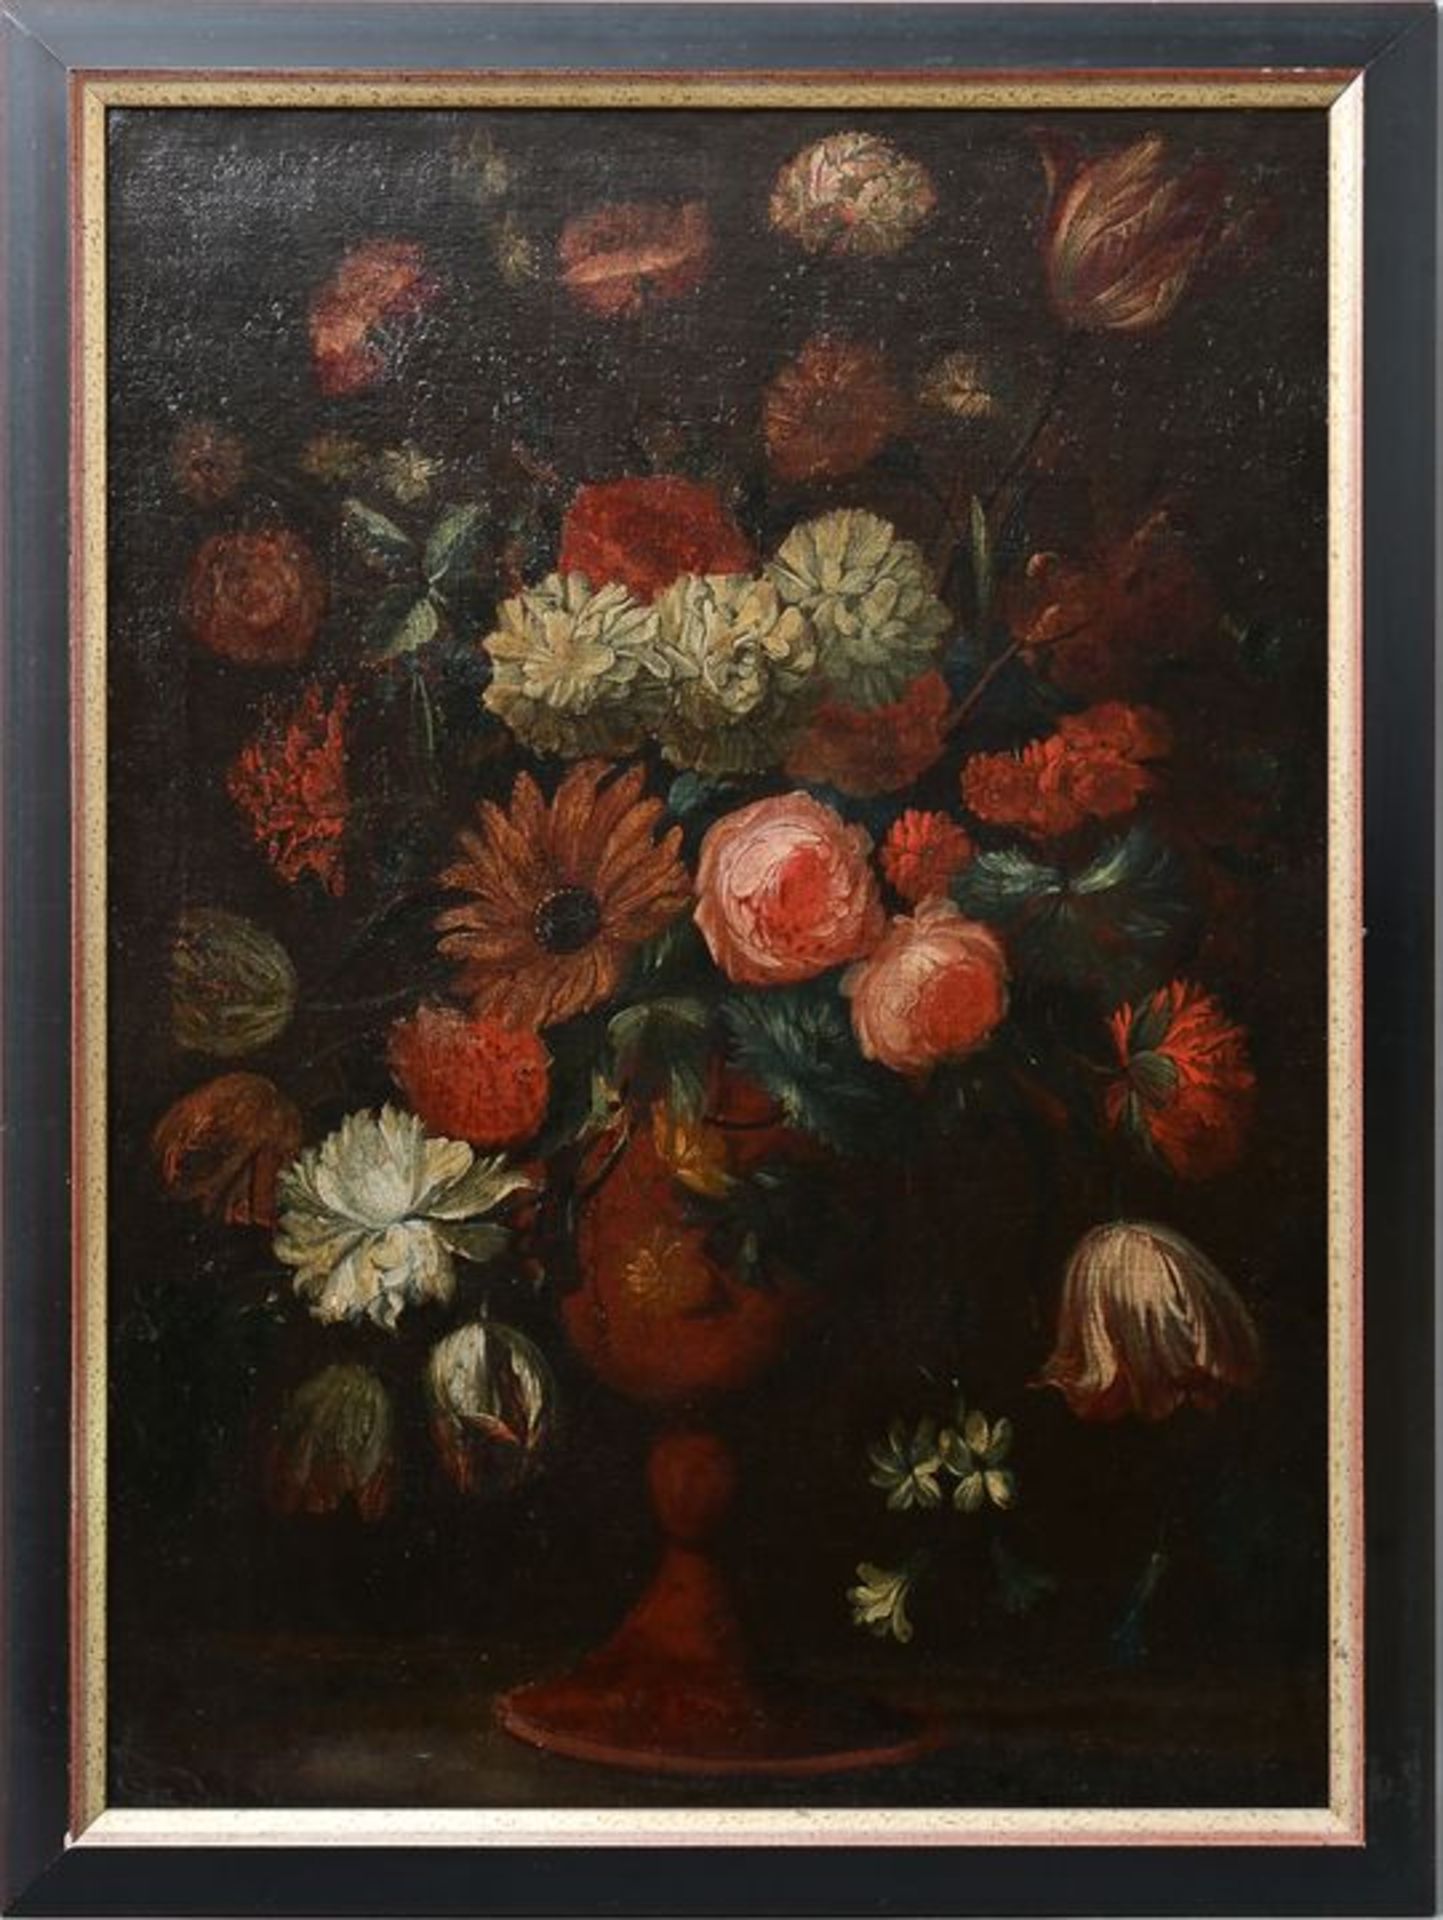 Blumenstillleben, 18. Jh. / Flower still life, 18th cent. - Image 2 of 3